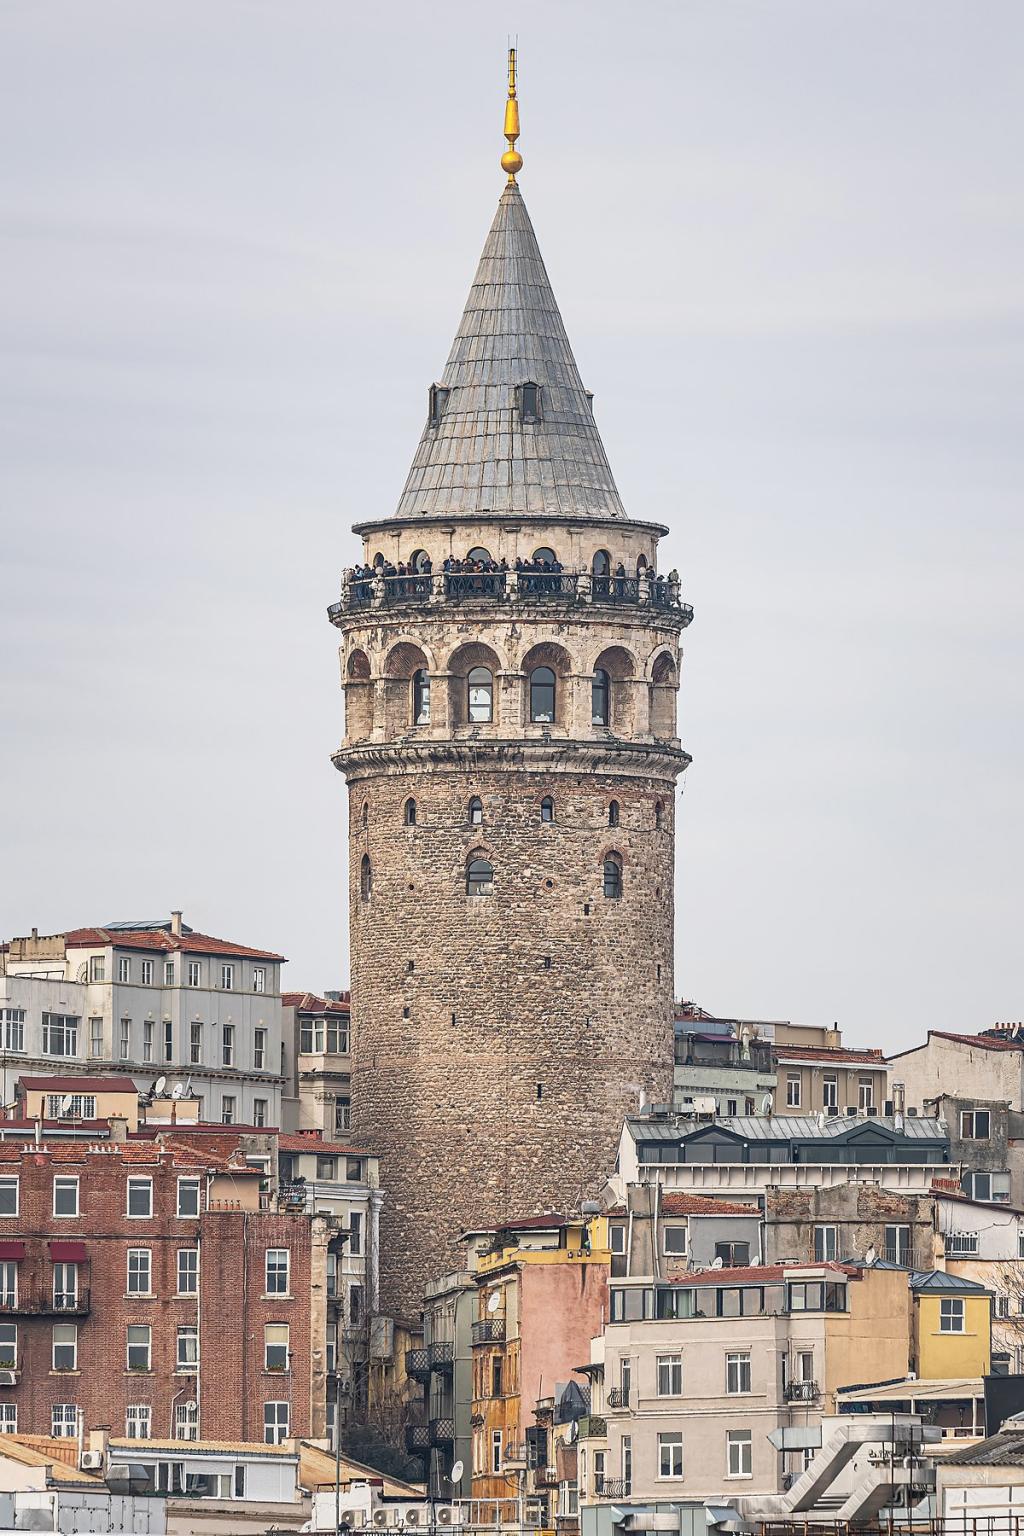 عکس برج گالاتا استانبول